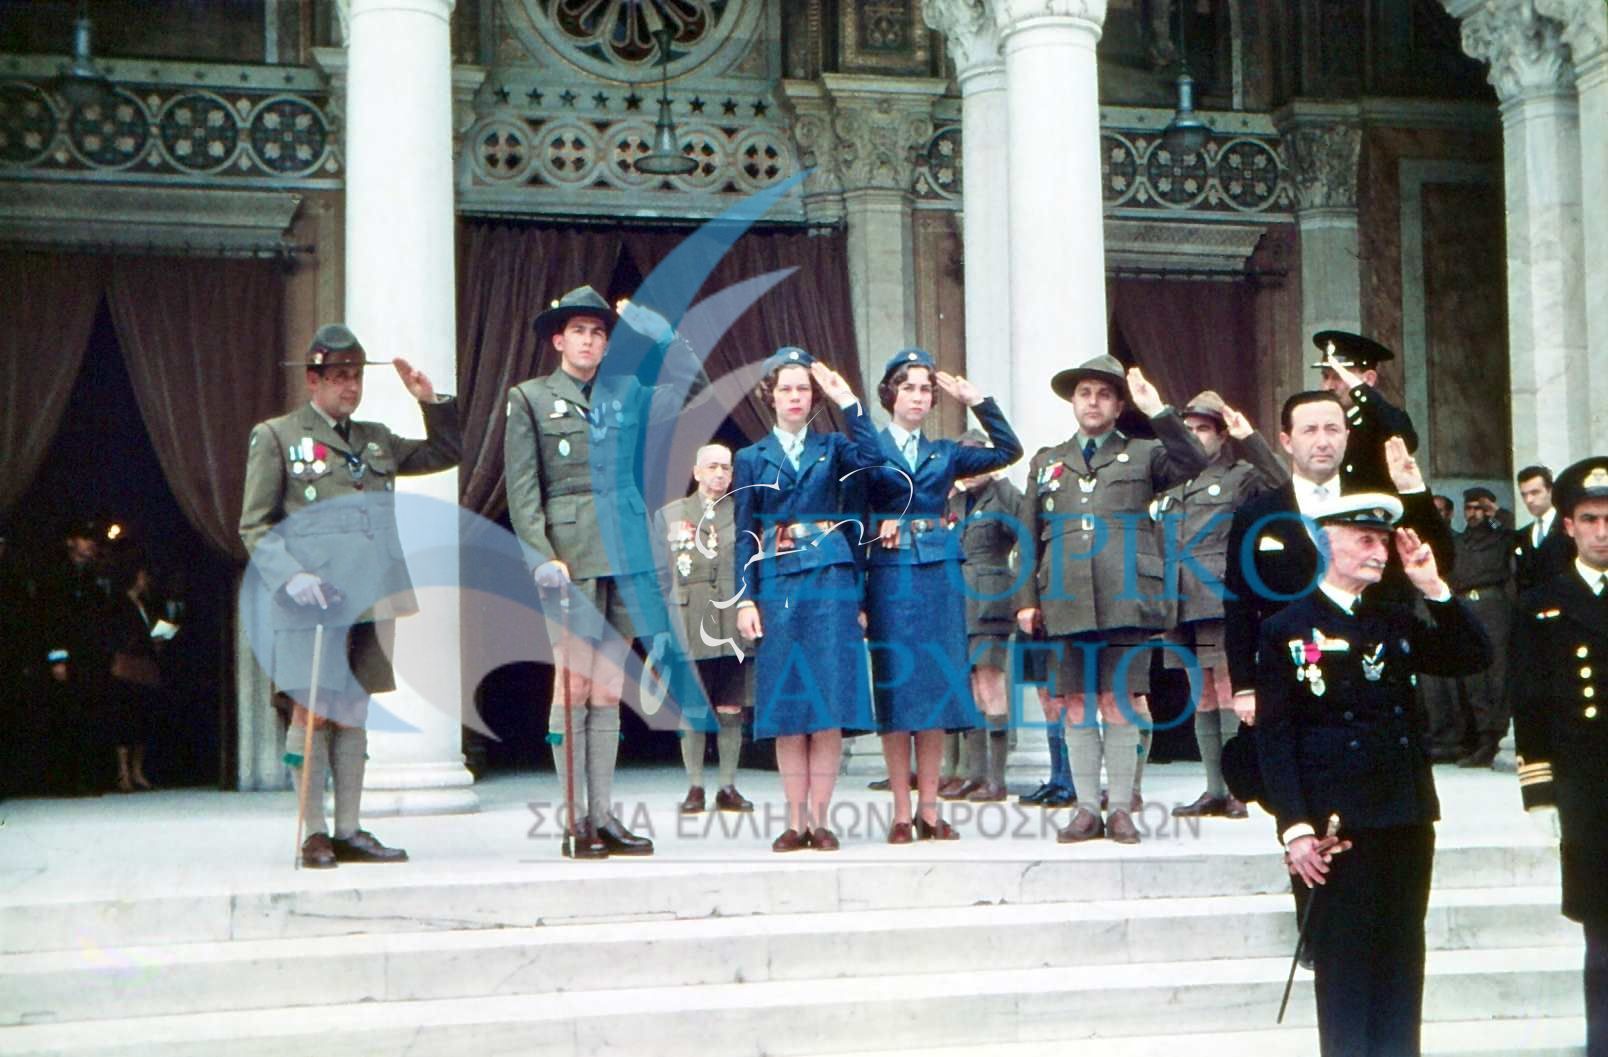 Ο Διάδοχος Κωνσταντίνος με τις Πριγκίπισες Ειρήνη & Σοφία και μέλη του ΔΣ ΣΕΠ έξωθεν της Μητρόπολης κατά την δοξολογία για το ιωβηλαίο του ΣΕΠ το 1960. Διακρίνονται ο ΓΕ Δ. Αλεξάτος, Δ. Μακρίδης,  Μ. Σοφιάνος.